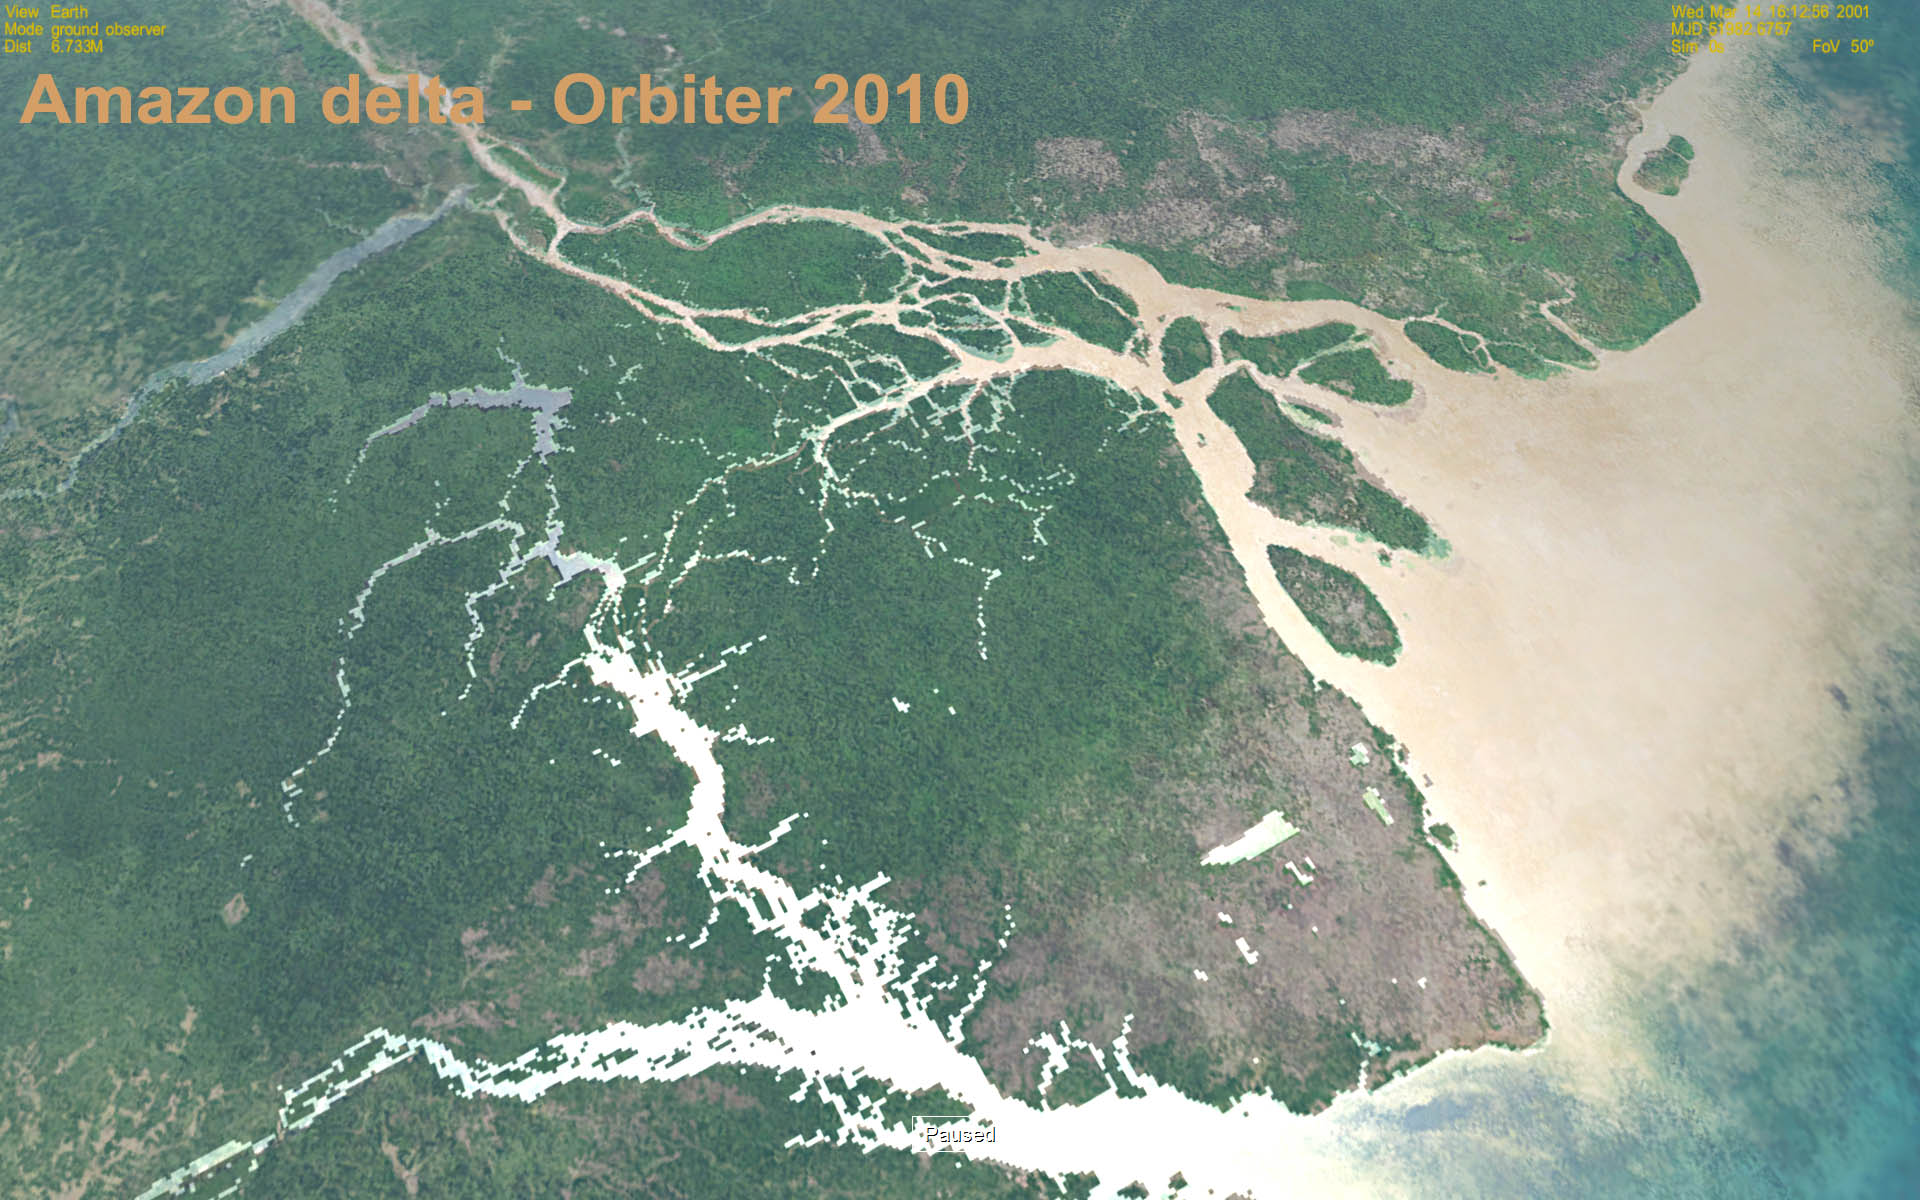 Amazon delta - Orbiter 2010 water mask